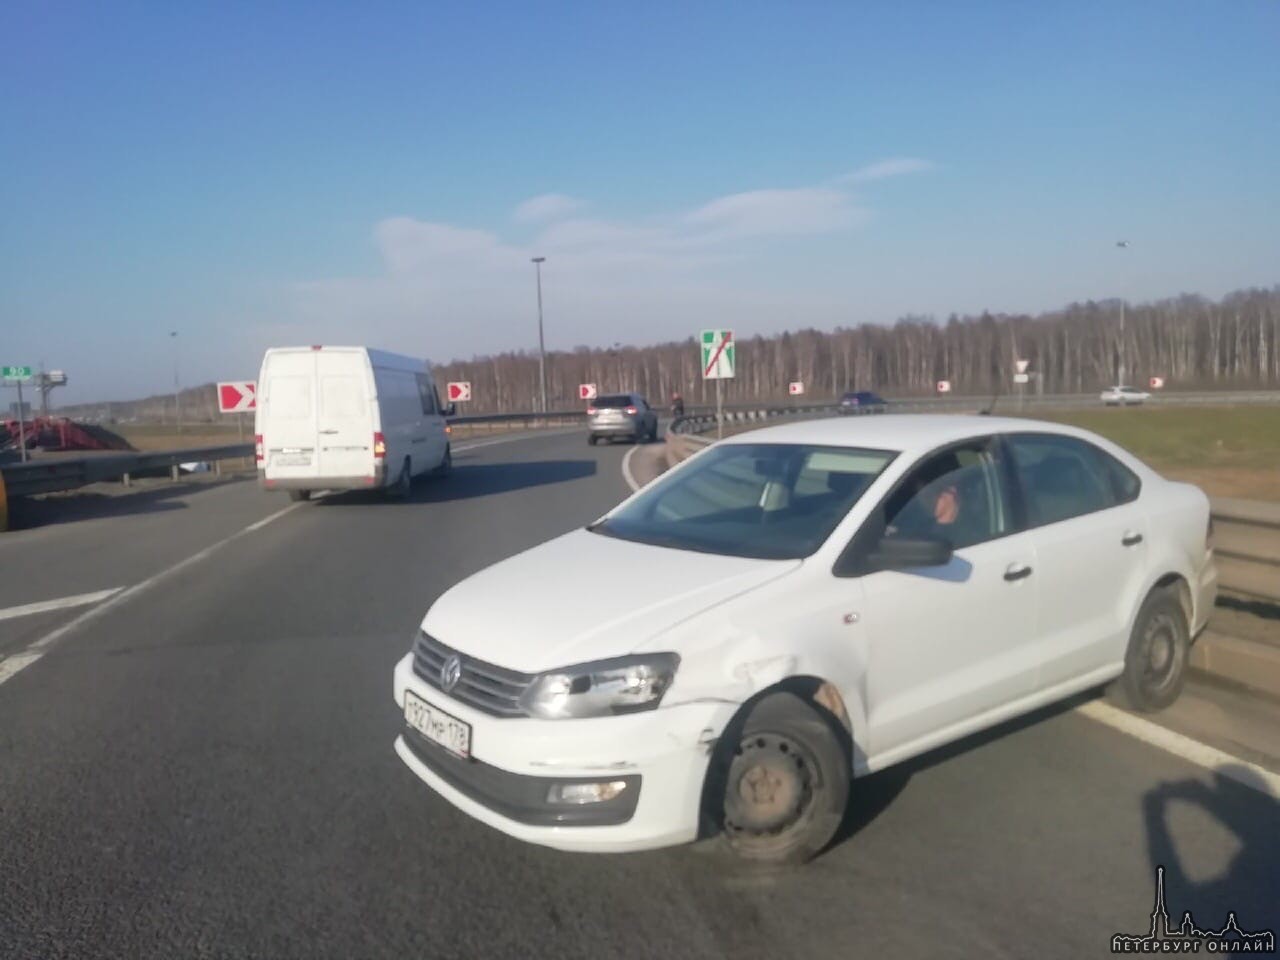 7 апреля примерно в 15:40 водитель Опеля подрезал белый Volkswagen Поло ближе к съезду на Народную ...